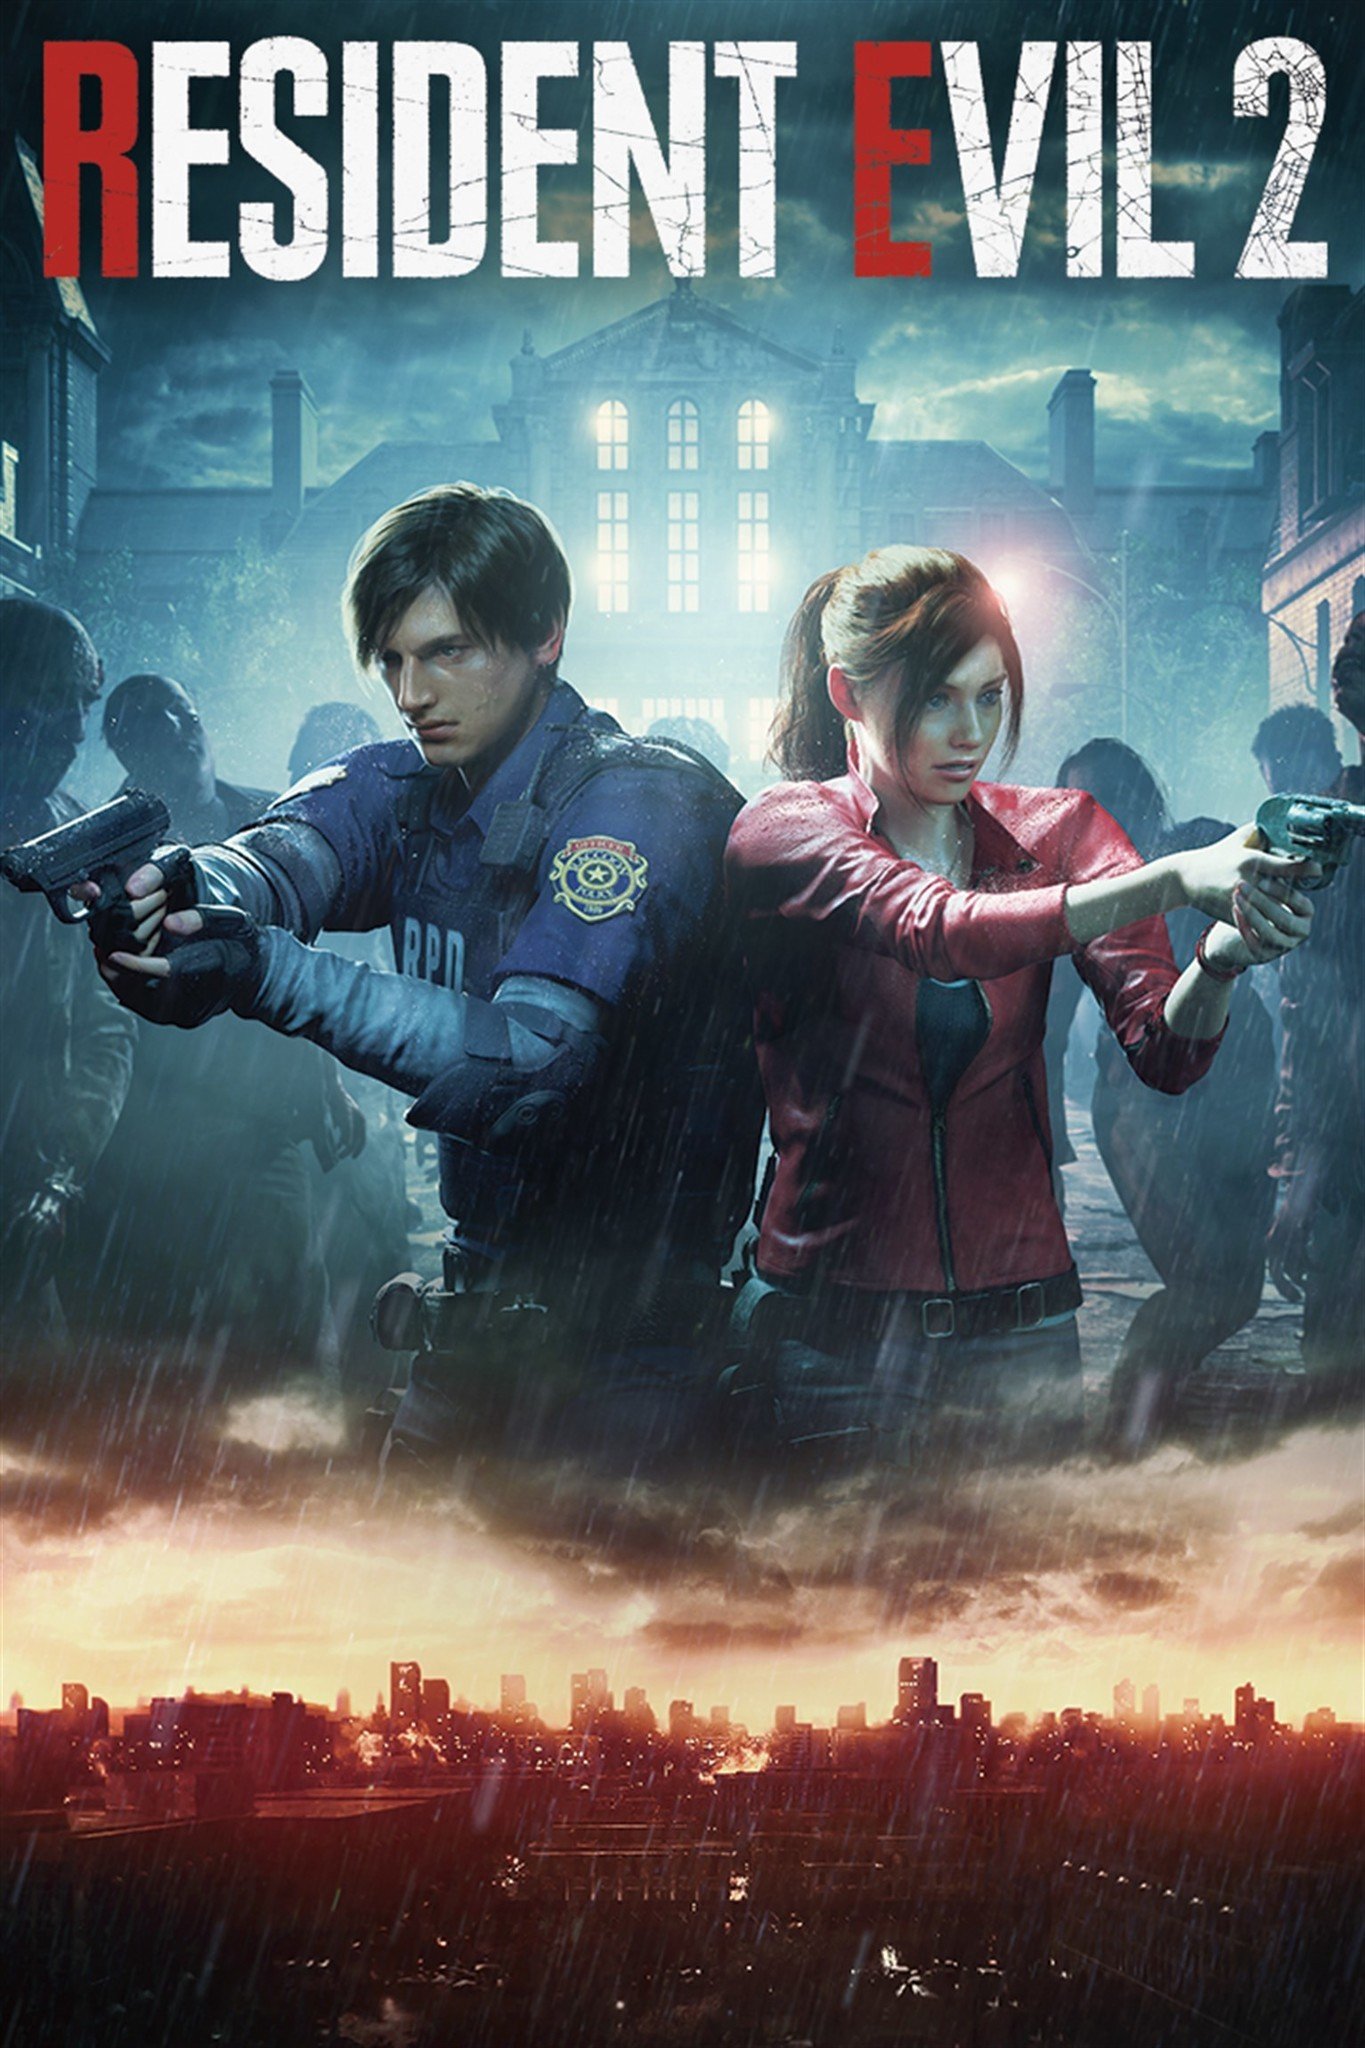 Resident Evil 2 Box Art